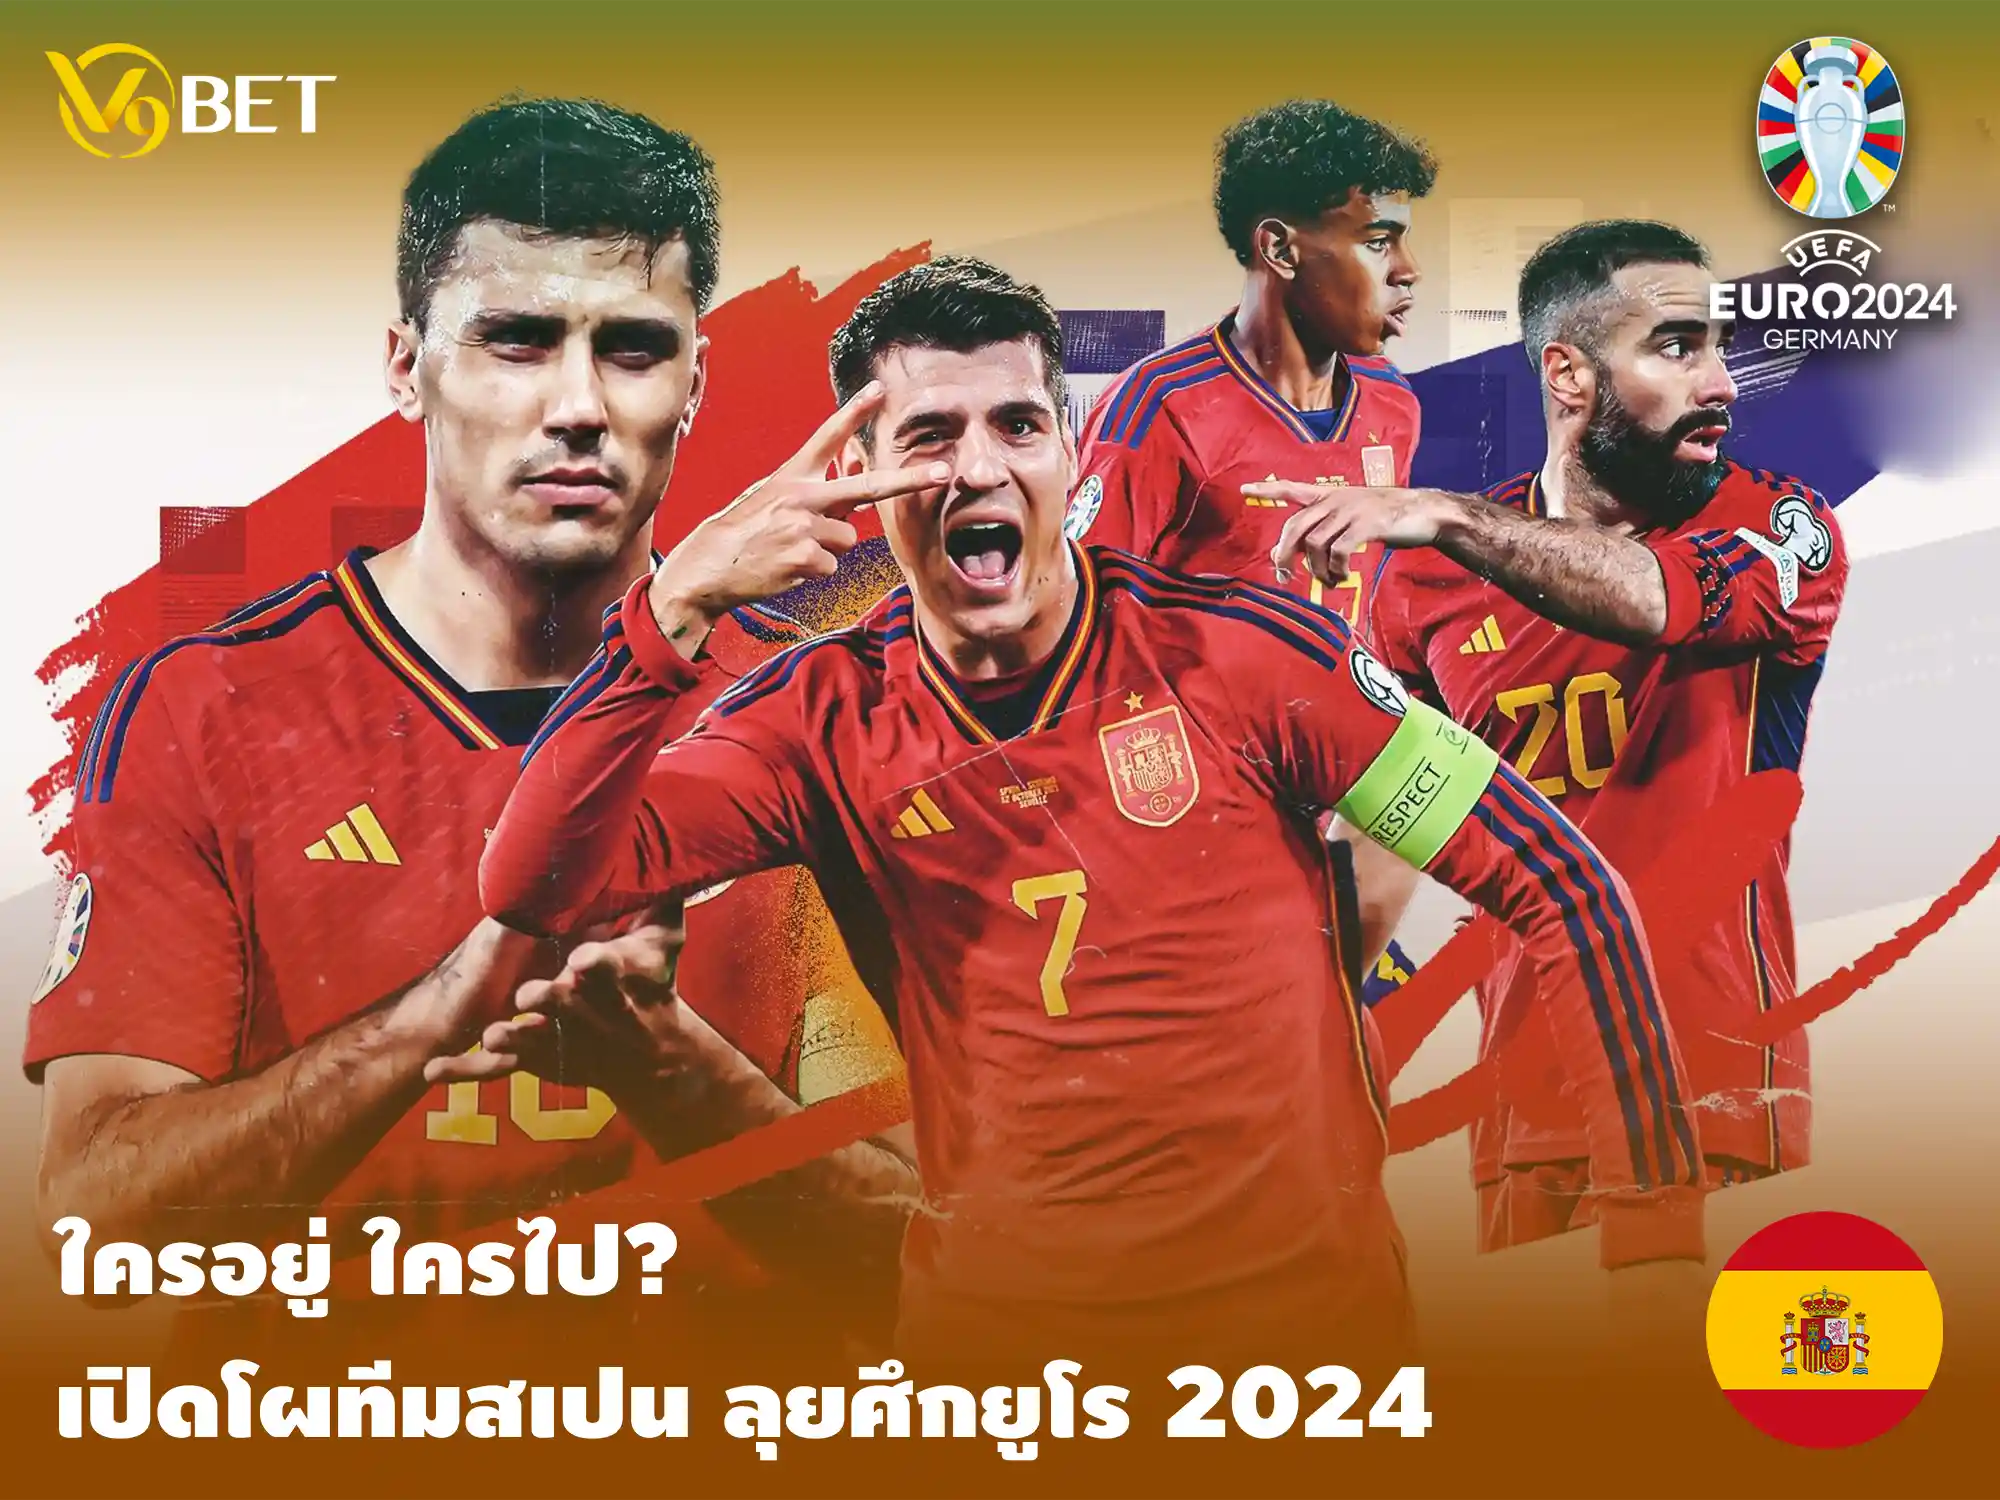 ใครอยู่ใครไป? เปิดโผทีม สเปน ยูโร 2024 กับความหวังลุ้นแชมป์ยุโรป